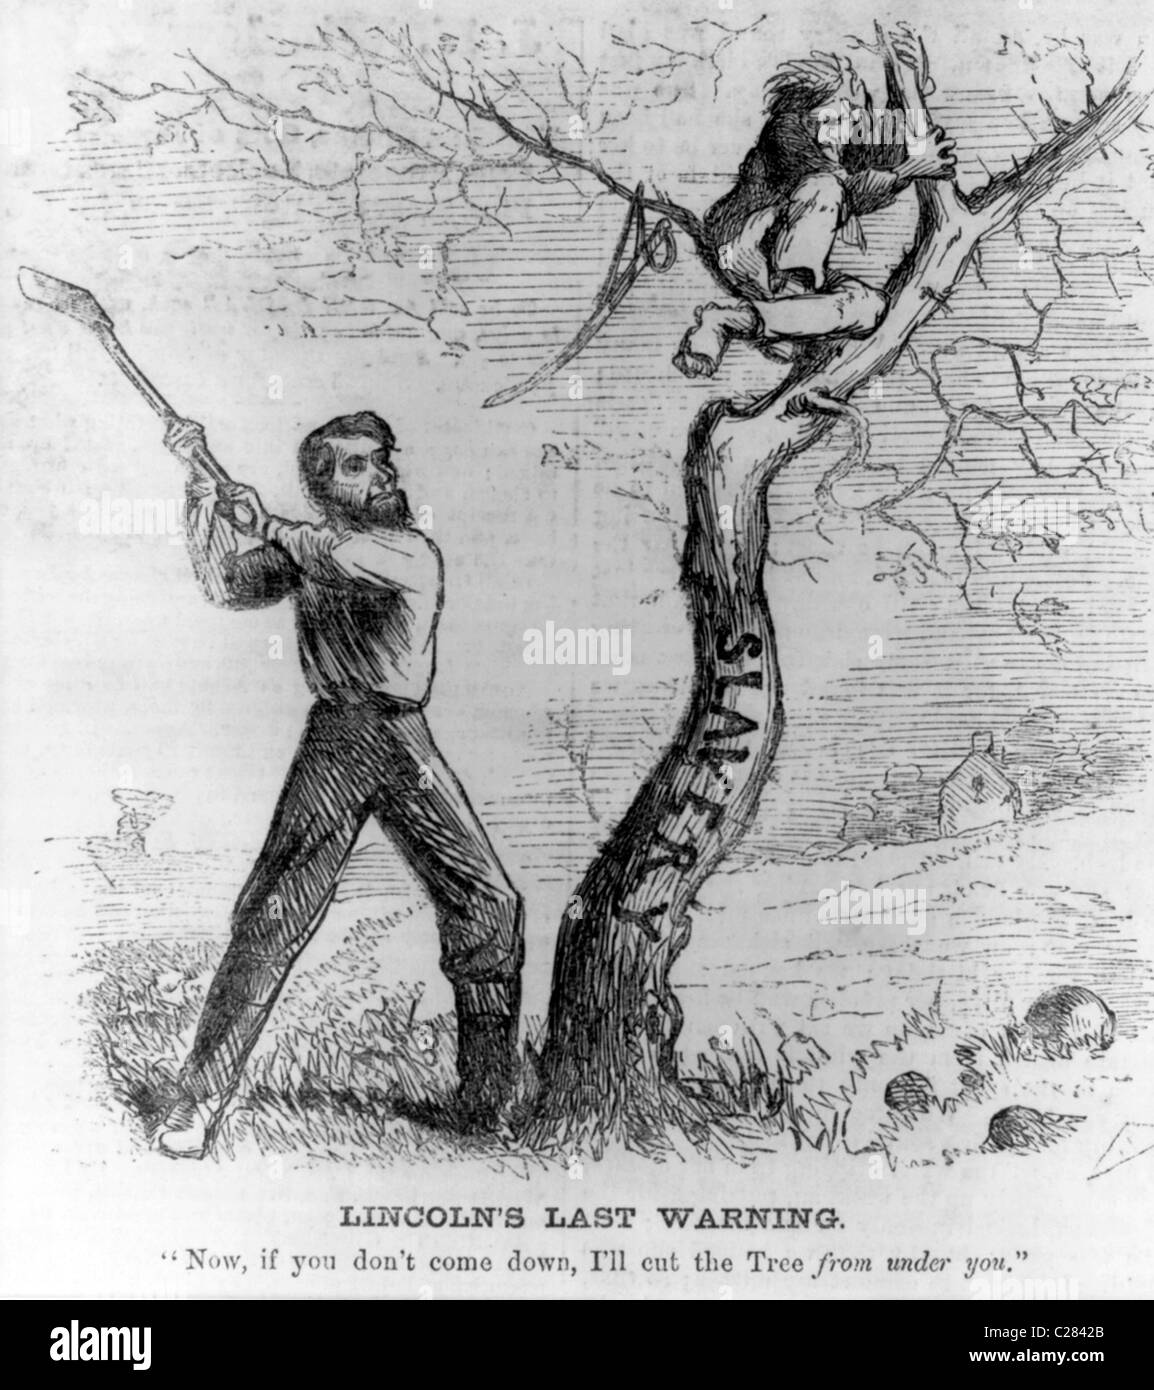 Lincoln's dernier avertissement. Le président Lincoln à propos de réduire l'esclavage (arbre) - avertissement un homme à descendre de l'arbre. Banque D'Images